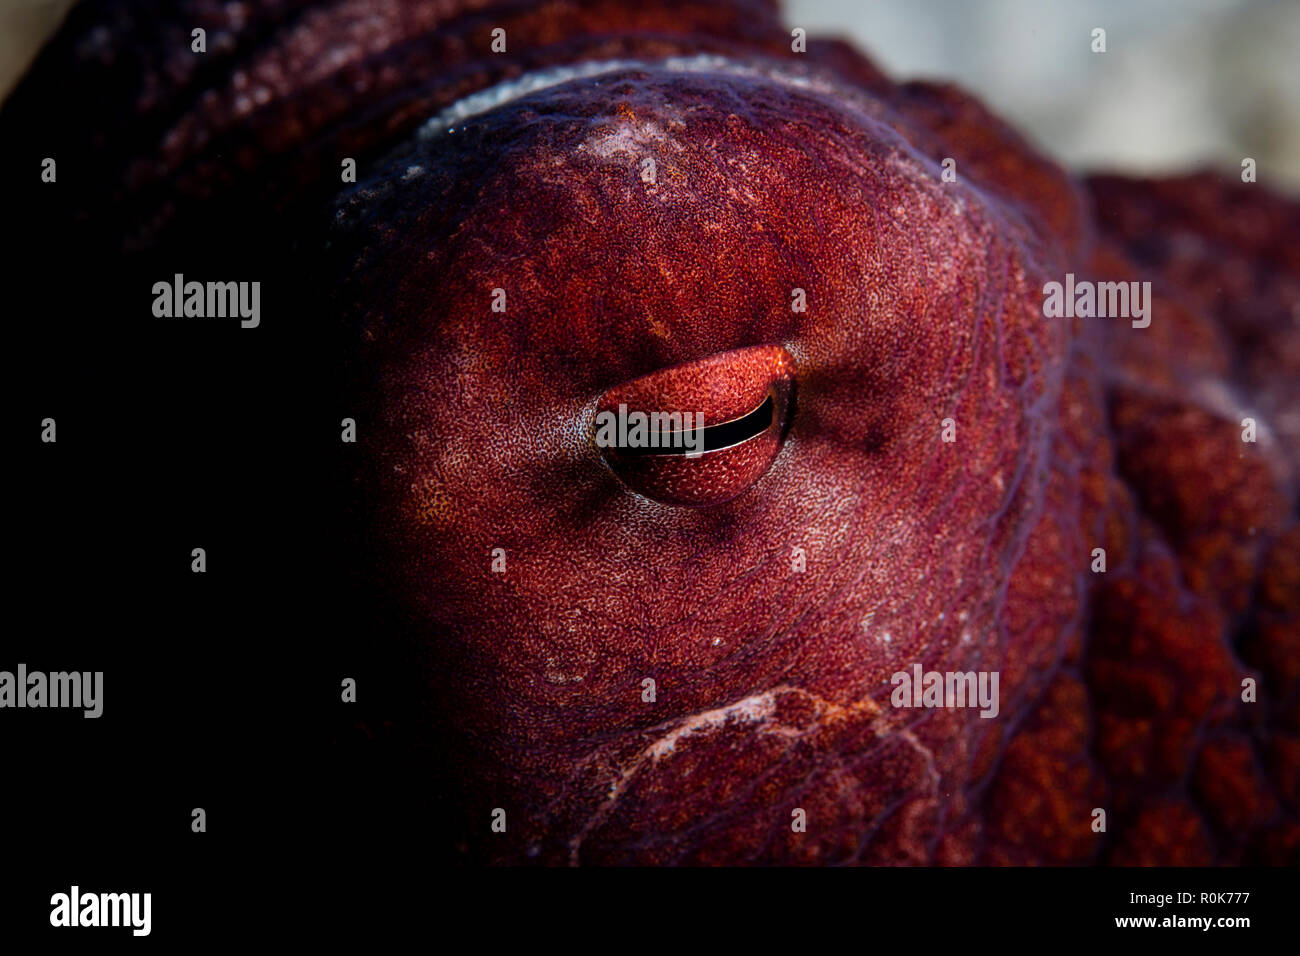 Dettaglio di un occhio di un reef octopus. Foto Stock